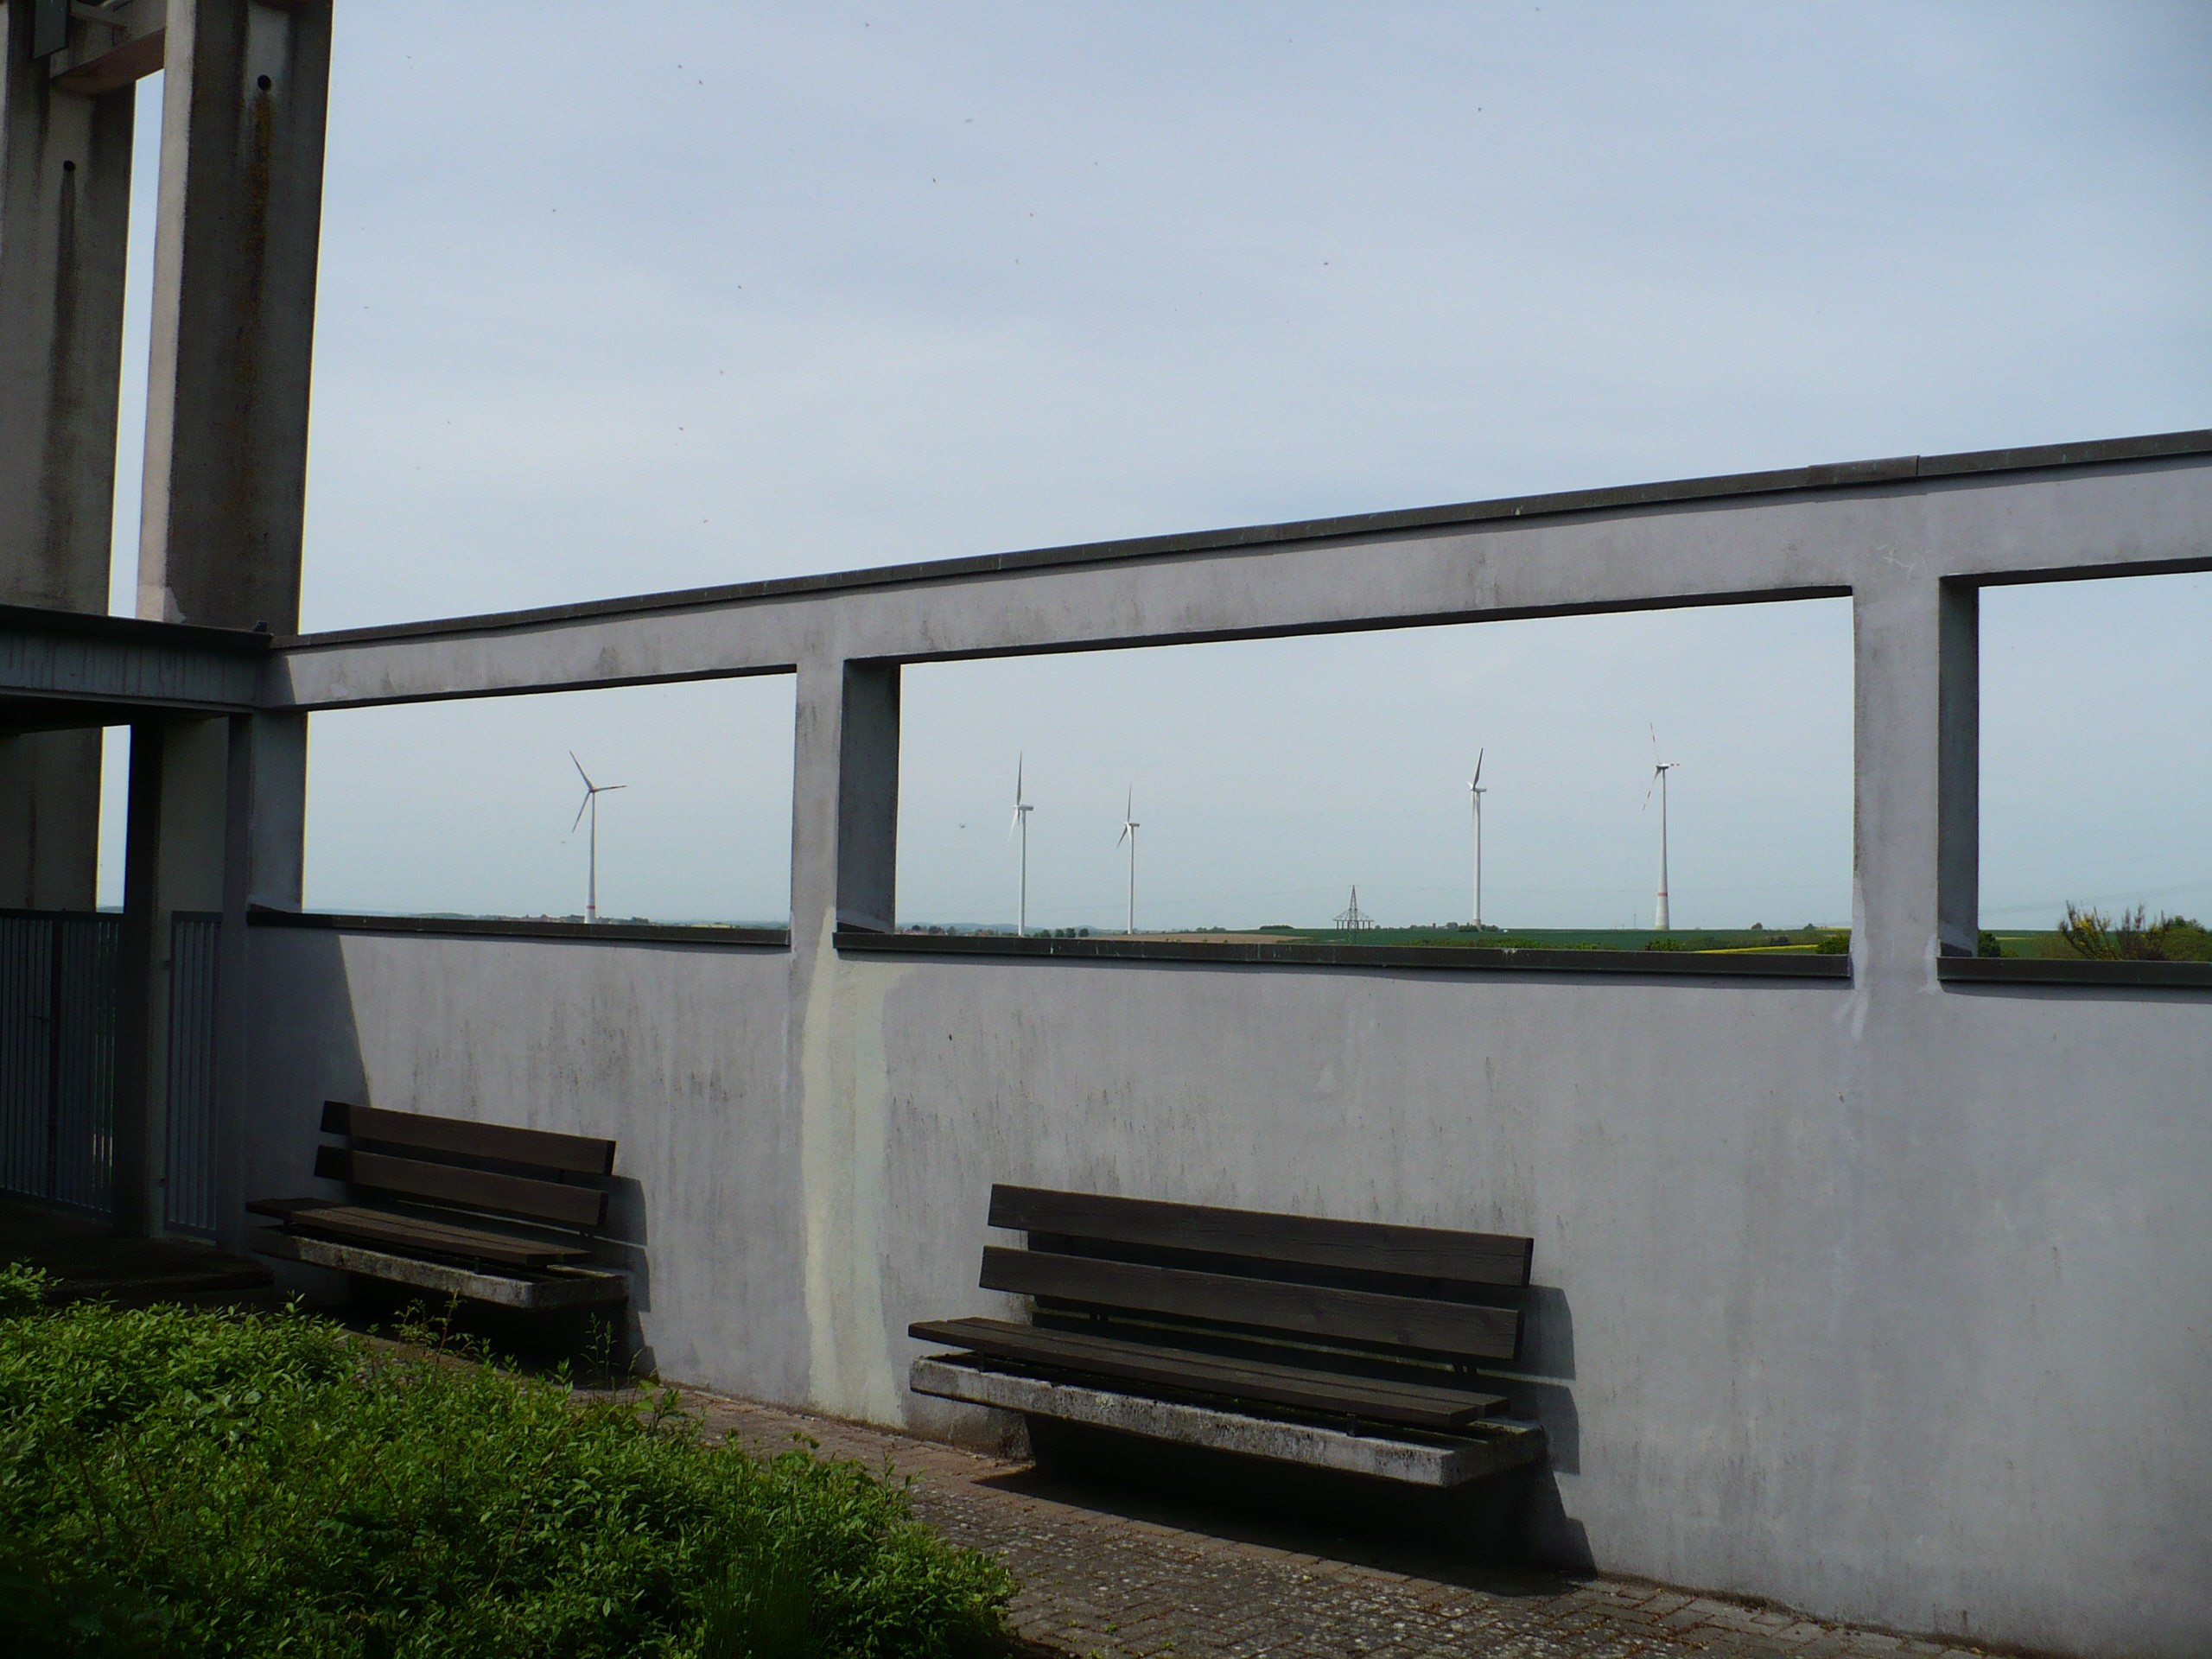 Abb.: Am Friedhof der Gemeinde Hermersberg, Blick auf 6 Windkraftanlagen Abb.